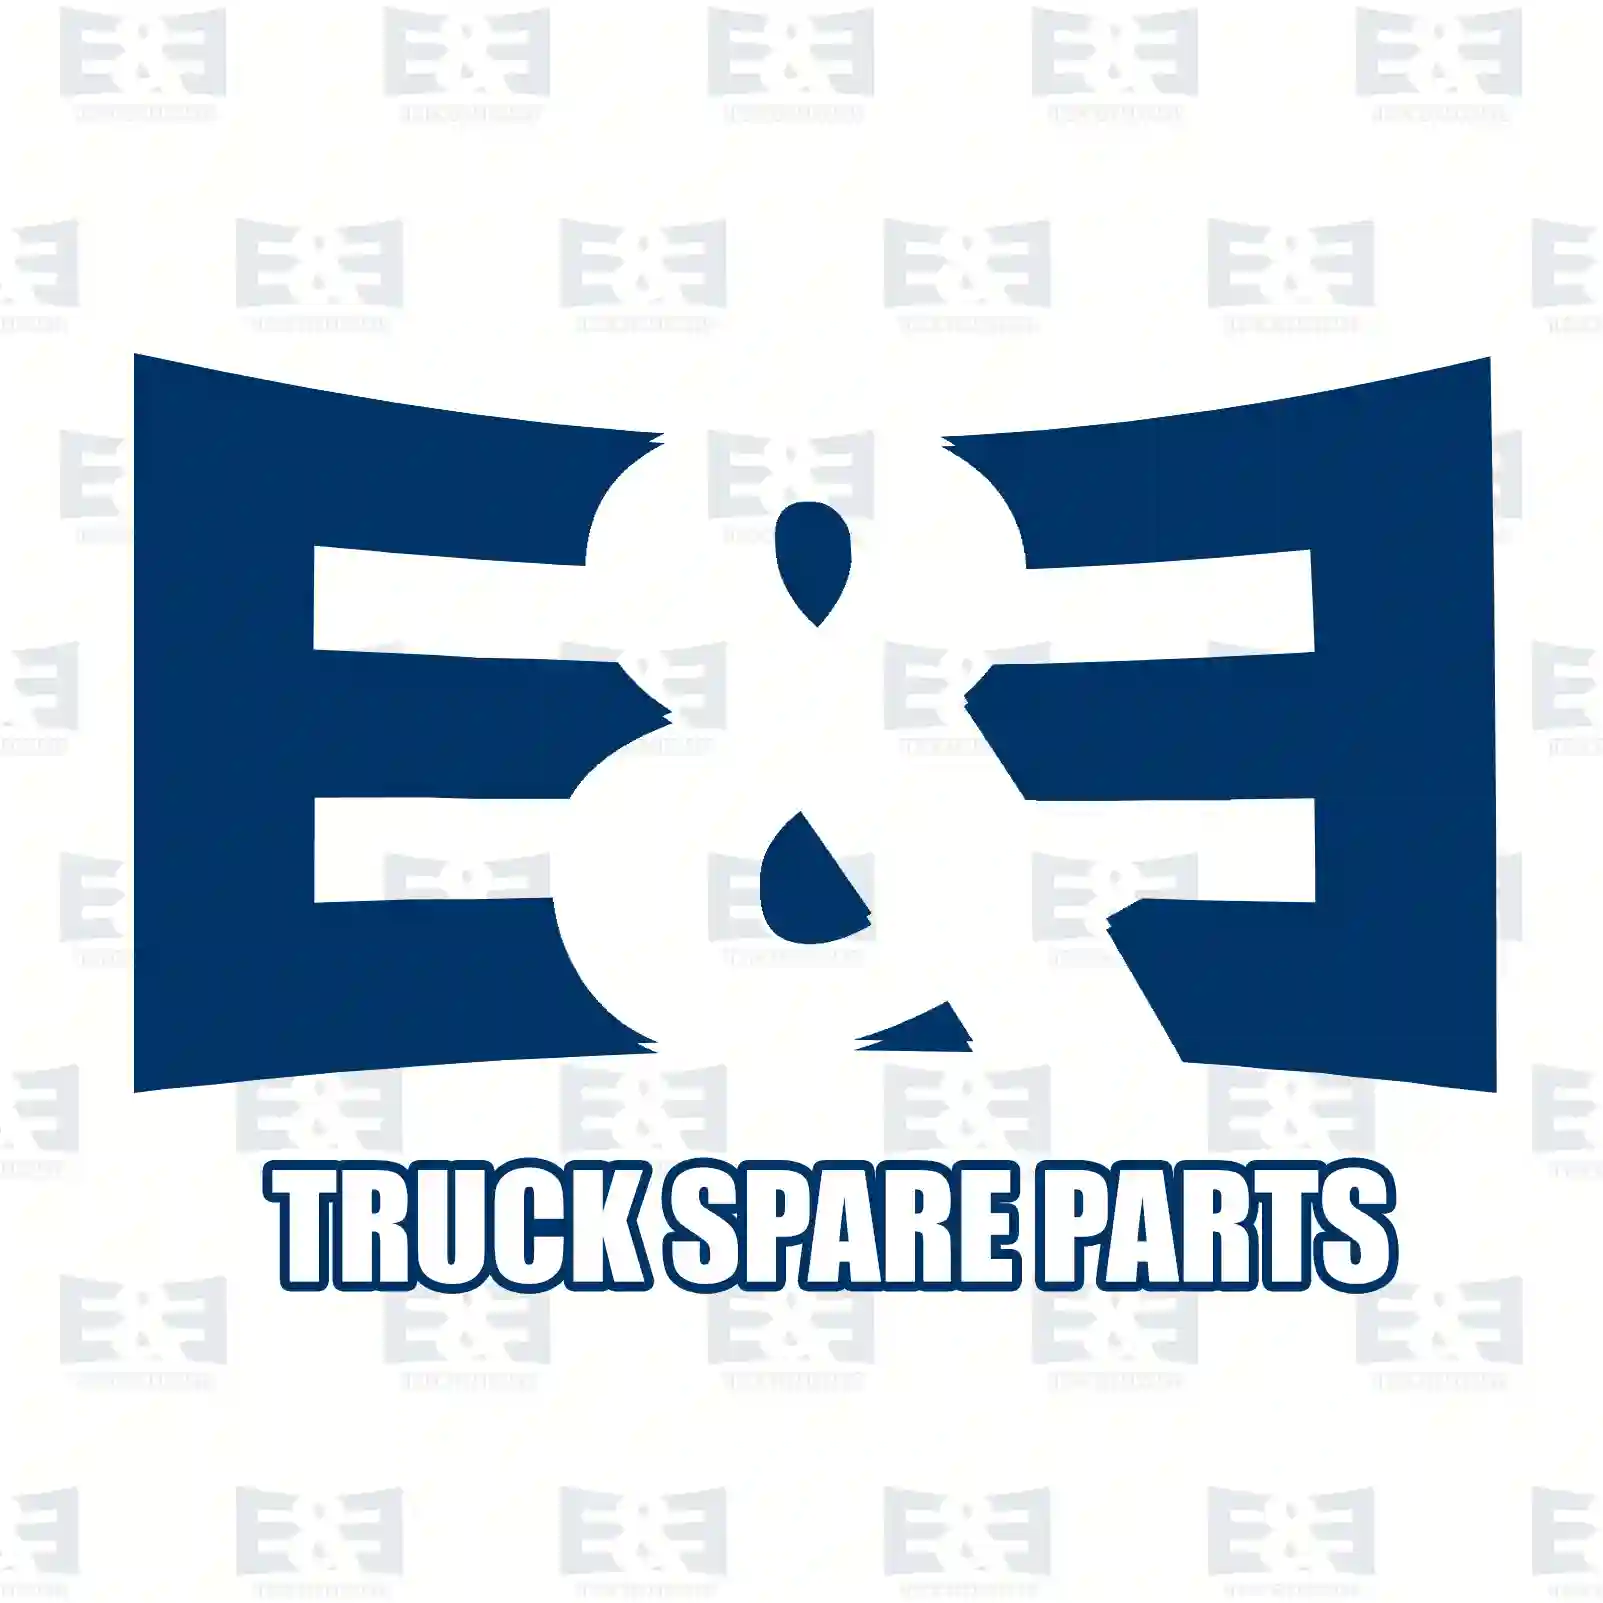 O-ring, 2E2285541, 81965030478, 1509356, ZG02864-0008 ||  2E2285541 E&E Truck Spare Parts | Truck Spare Parts, Auotomotive Spare Parts O-ring, 2E2285541, 81965030478, 1509356, ZG02864-0008 ||  2E2285541 E&E Truck Spare Parts | Truck Spare Parts, Auotomotive Spare Parts